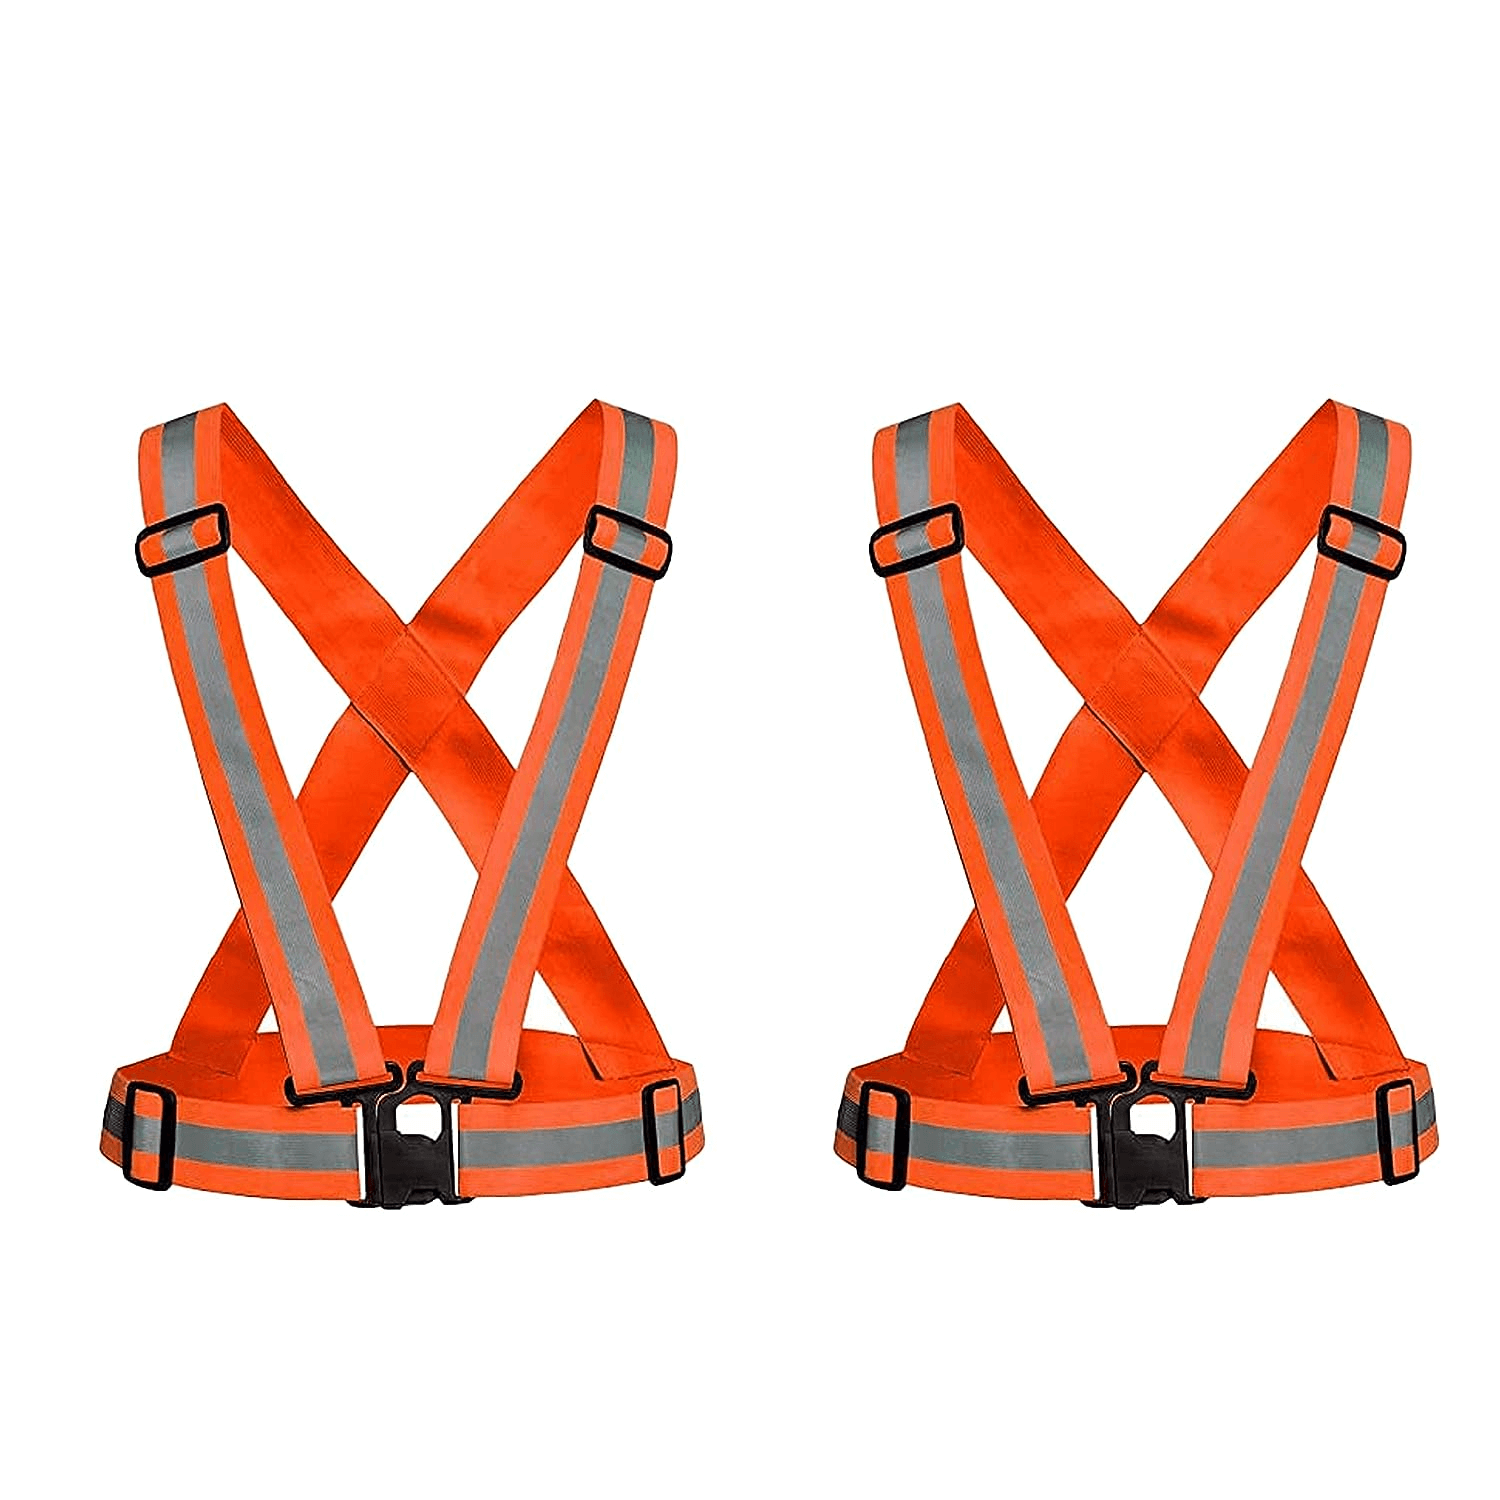 robustt-high-visibility-orange-protective-safety-reflective-vest-belt-jacket-night-cycling-reflector-strips-cross-belt-stripes-adjustable-vest-safety-jacket-pack-of-2